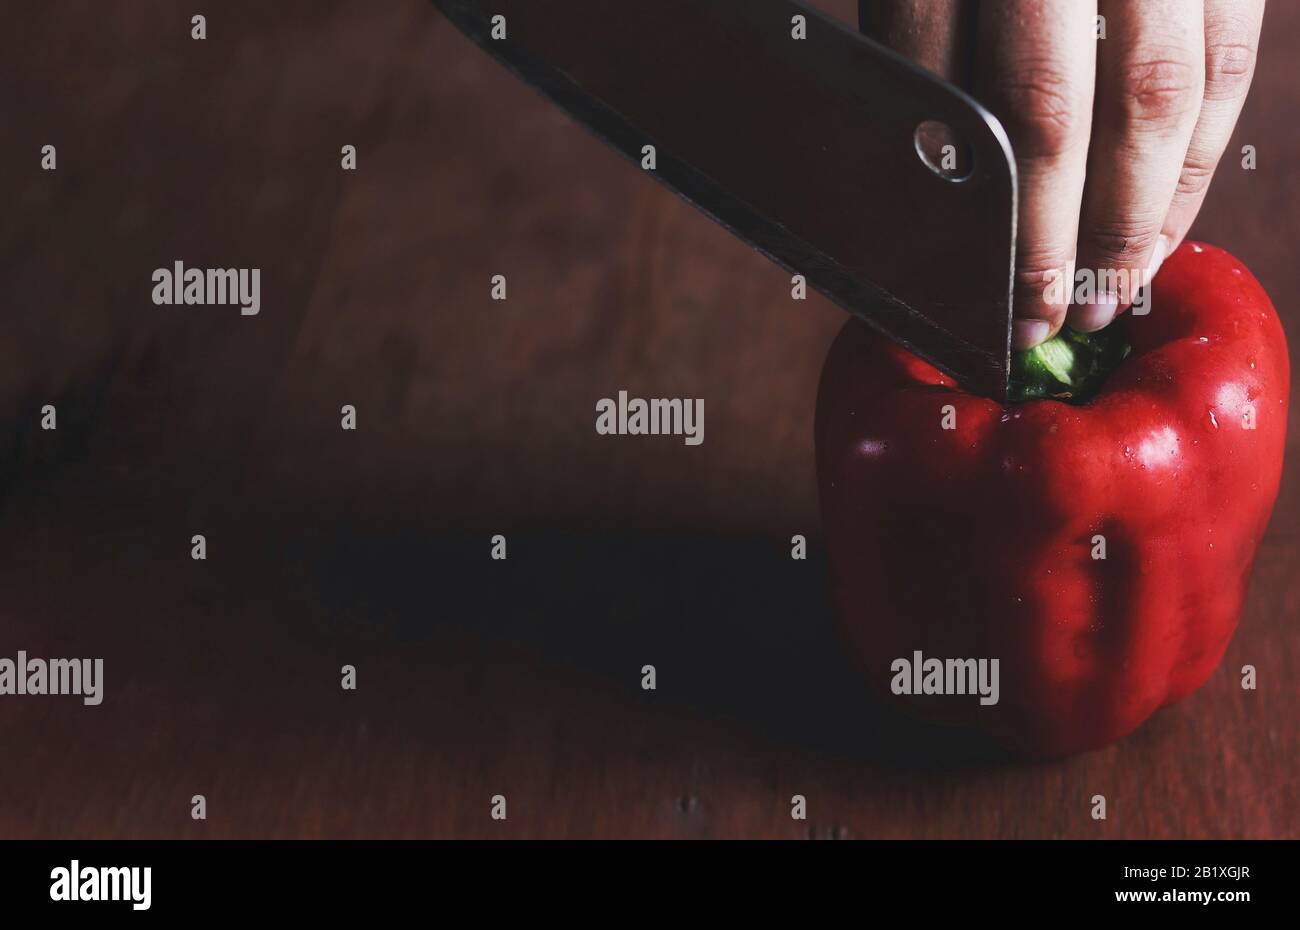 Minimalistisches Stillleben eines roten Paprika (Paprika), der in Scheiben geschnitten wird, um das Konzept der Küche, Küche, Gastronomie und der Lebensmittelindustrie zu zeigen Stockfoto